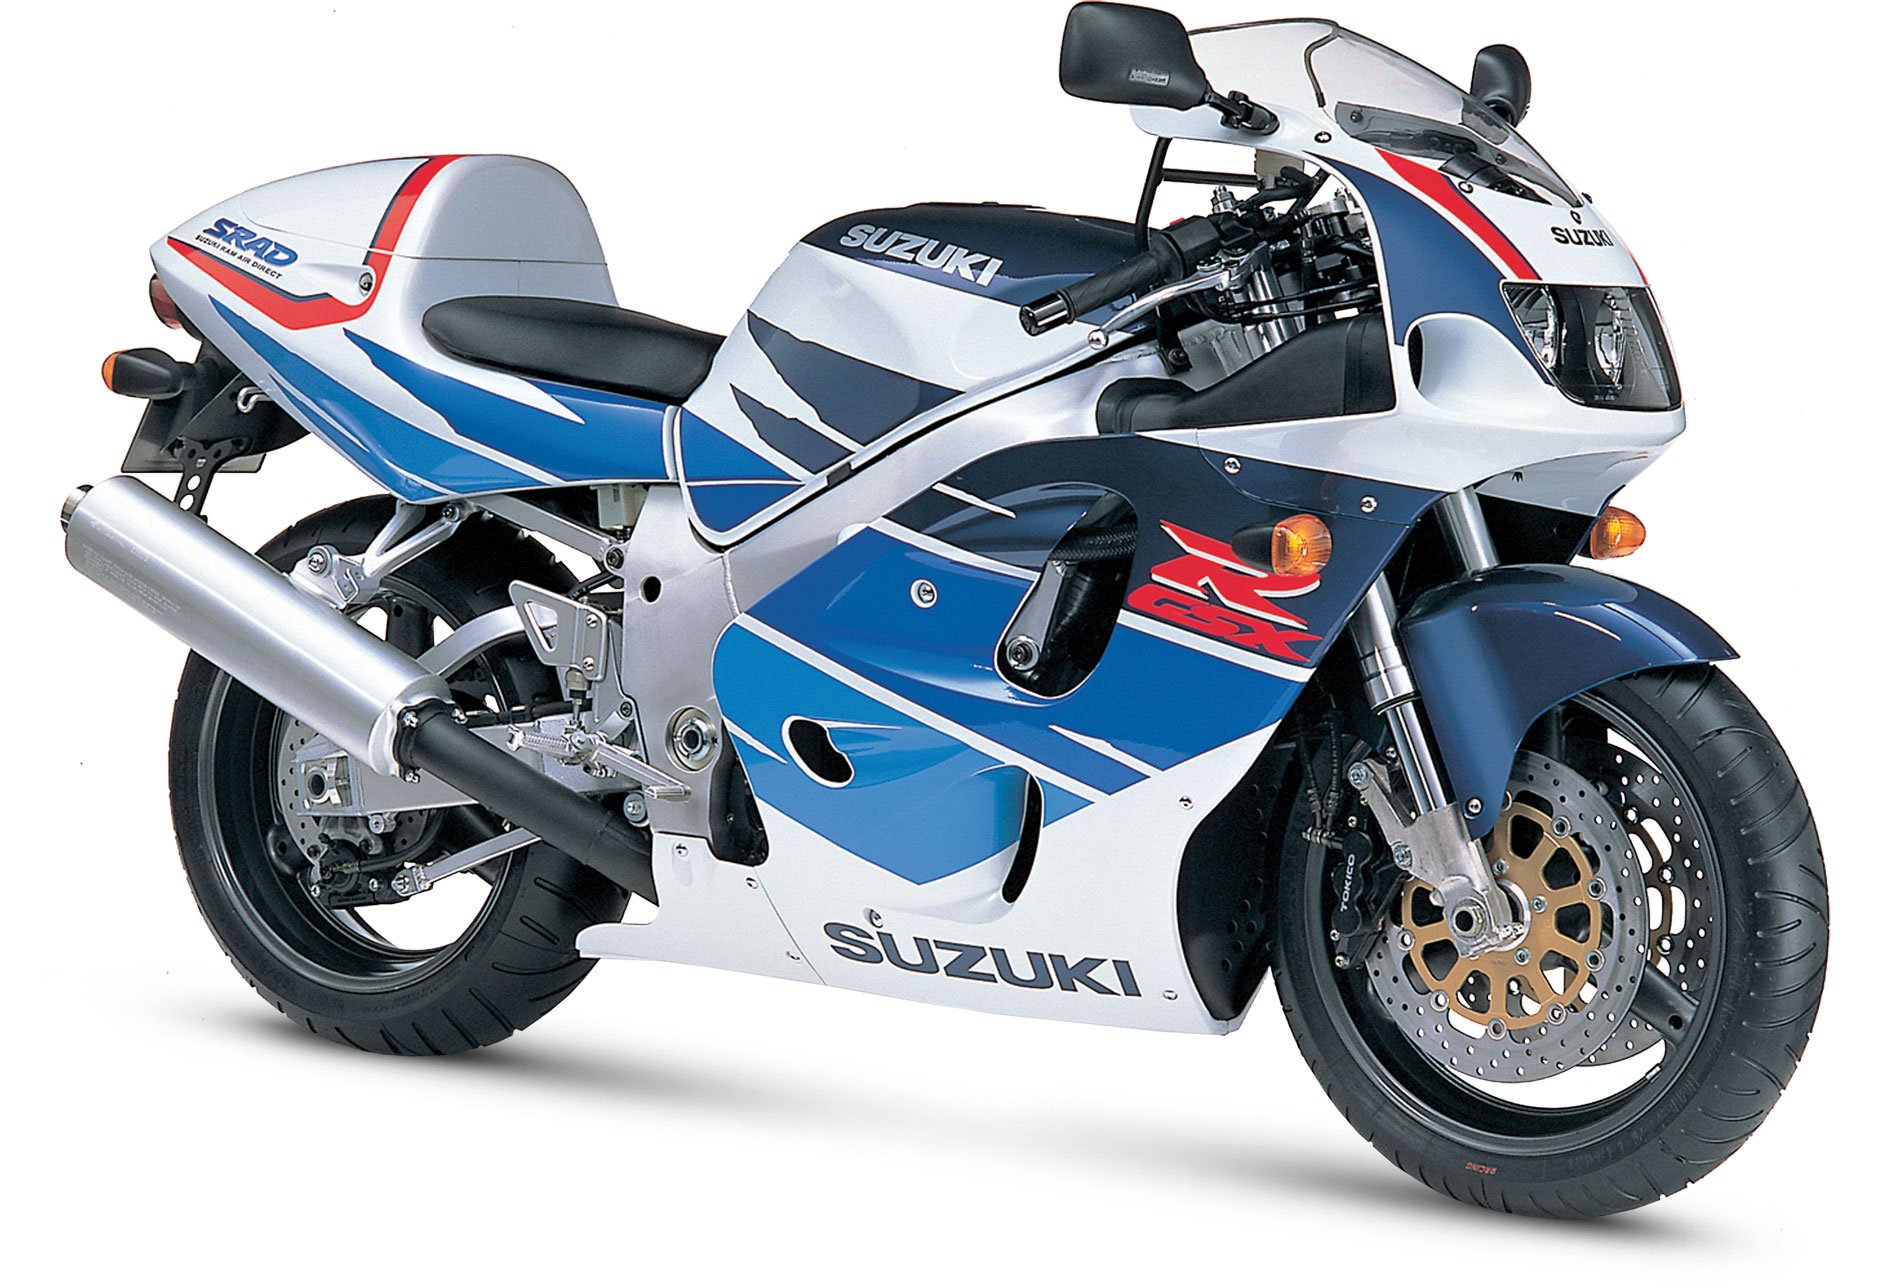 1996, Suzuki, Gsx r750, Motorcycles Wallpaper